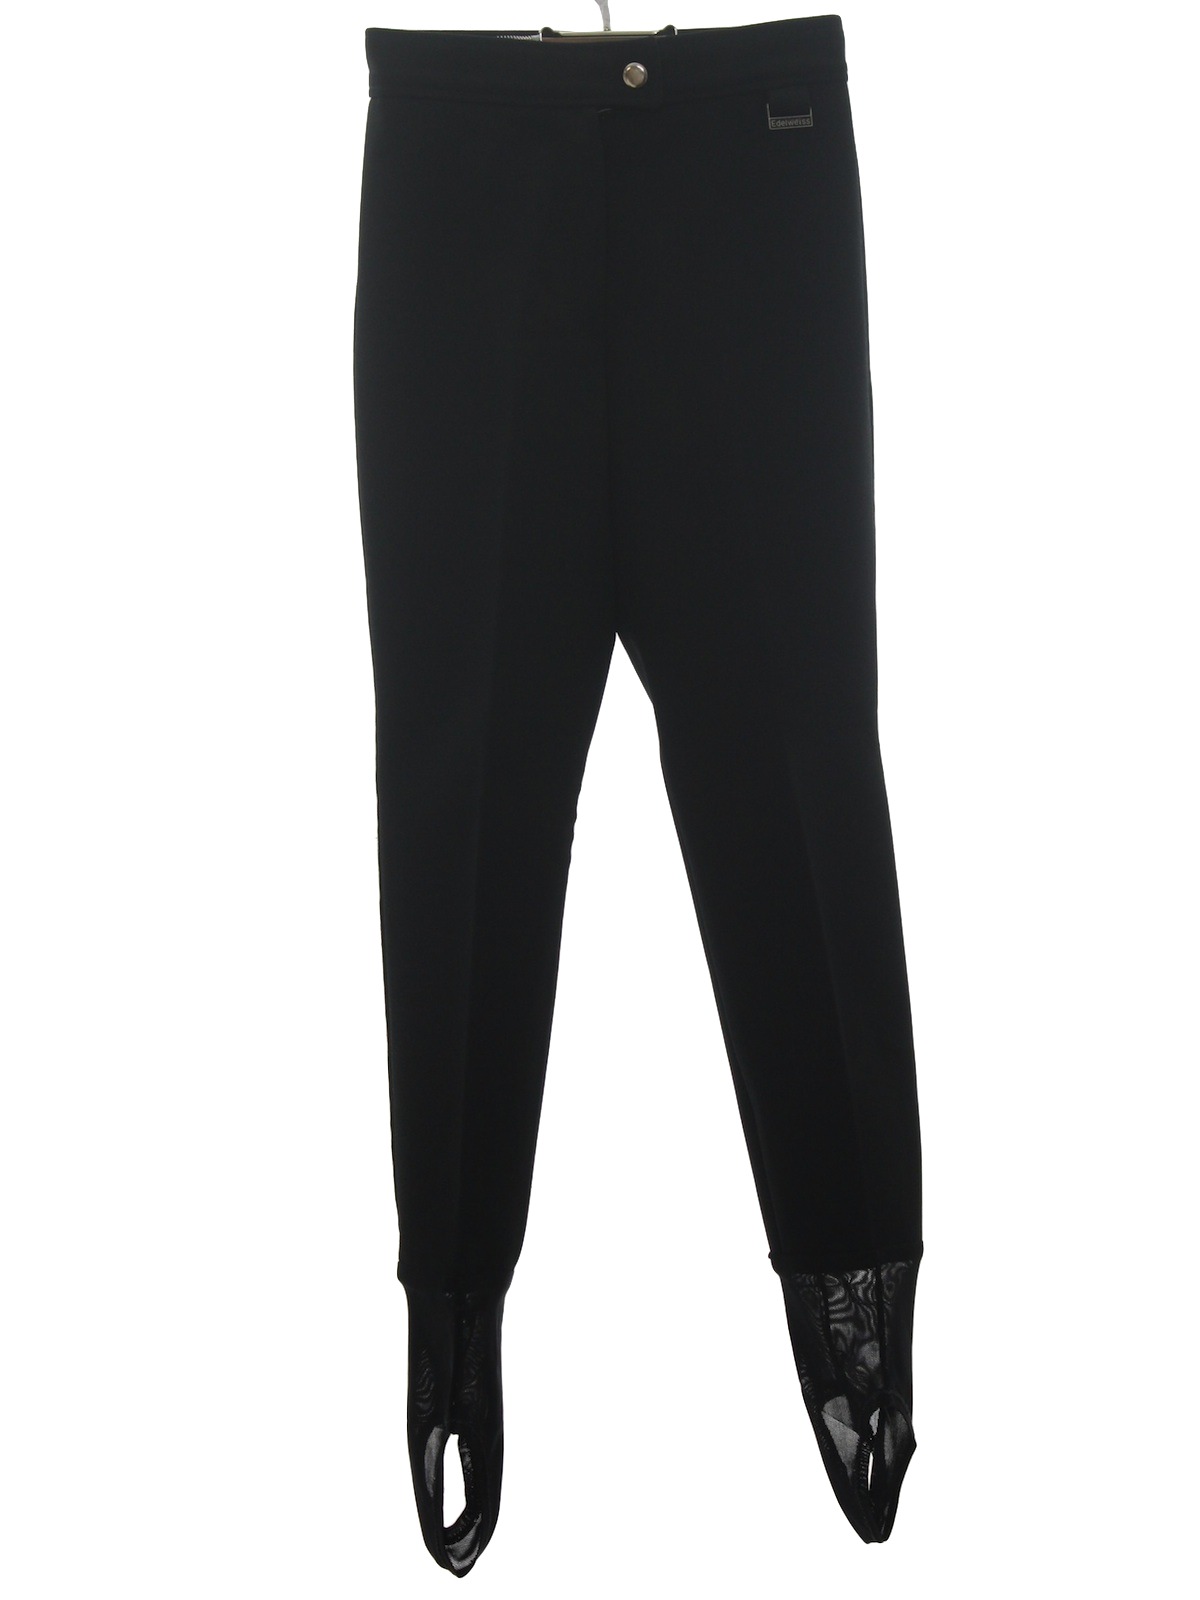 Edelweiss Skiwear Black Full Zip Leg Ski Pants - www.weeklybangalee.com